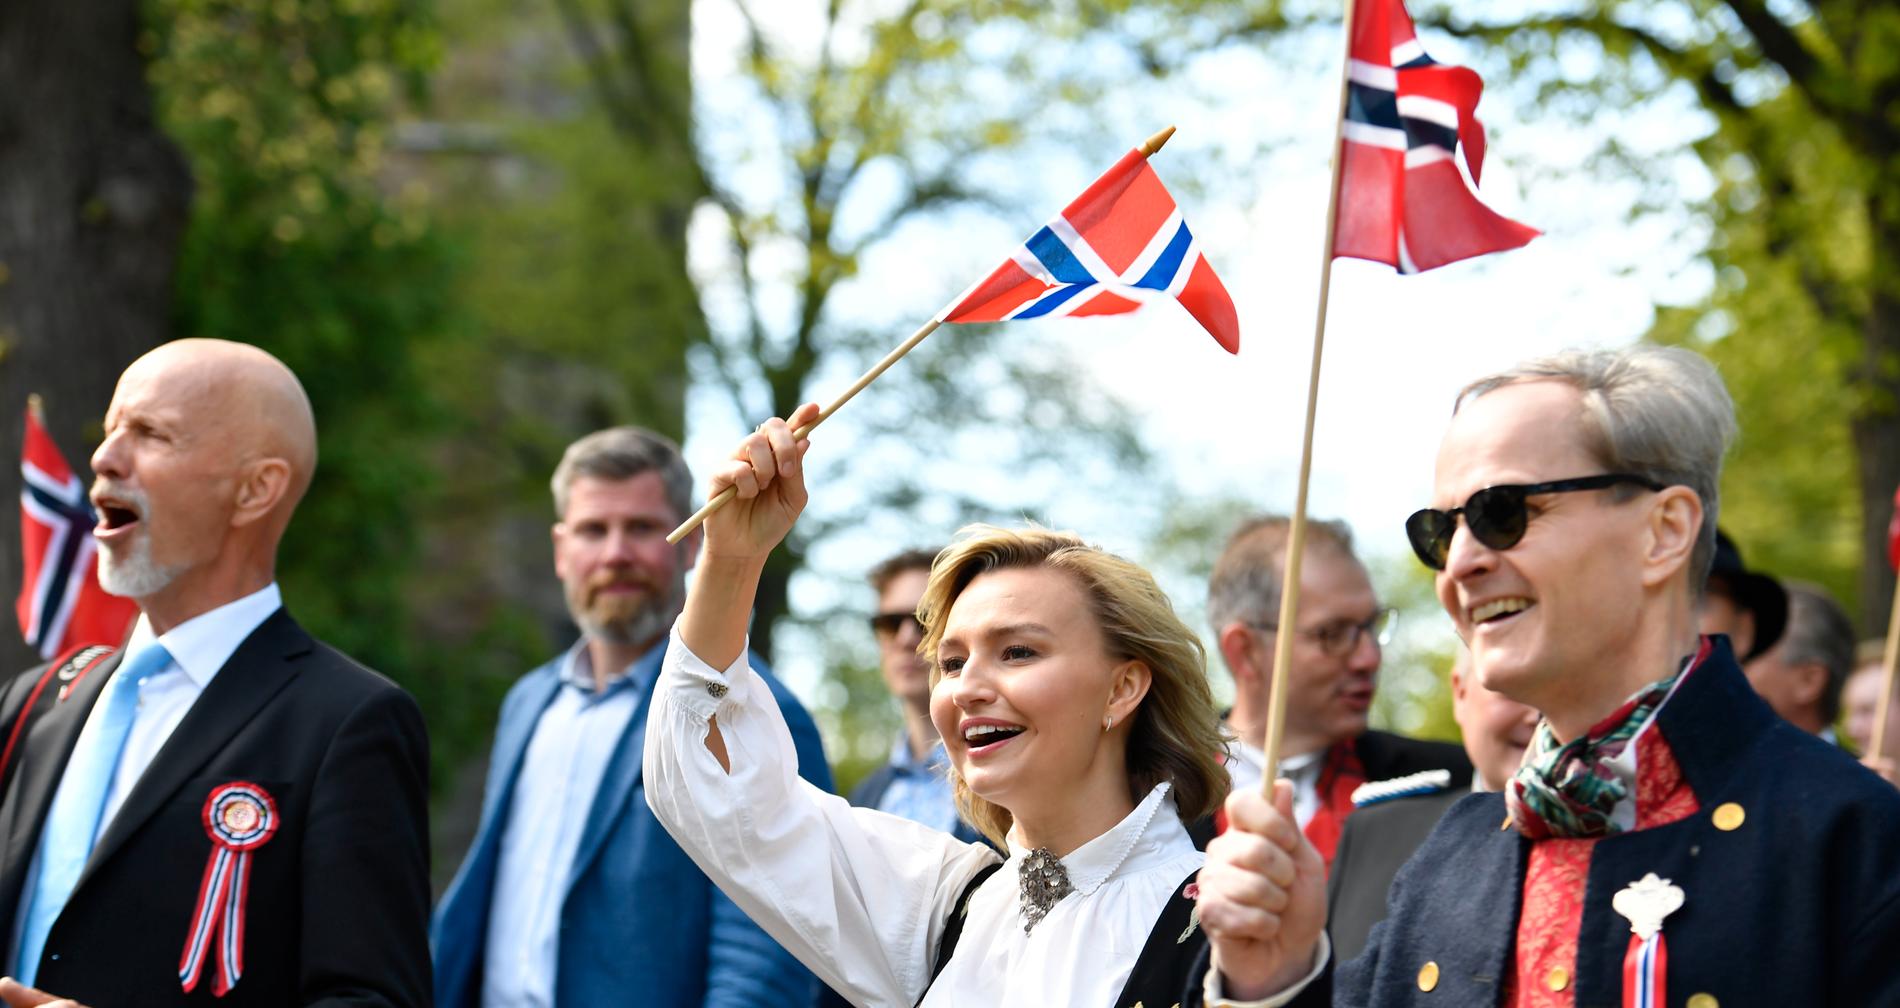 Ebba Busch och Jimmie Åkesson använder dubbla måttstockar i synen på kriminalitet. Vissa som bryter lagen anses hata Sverige, andra inte.